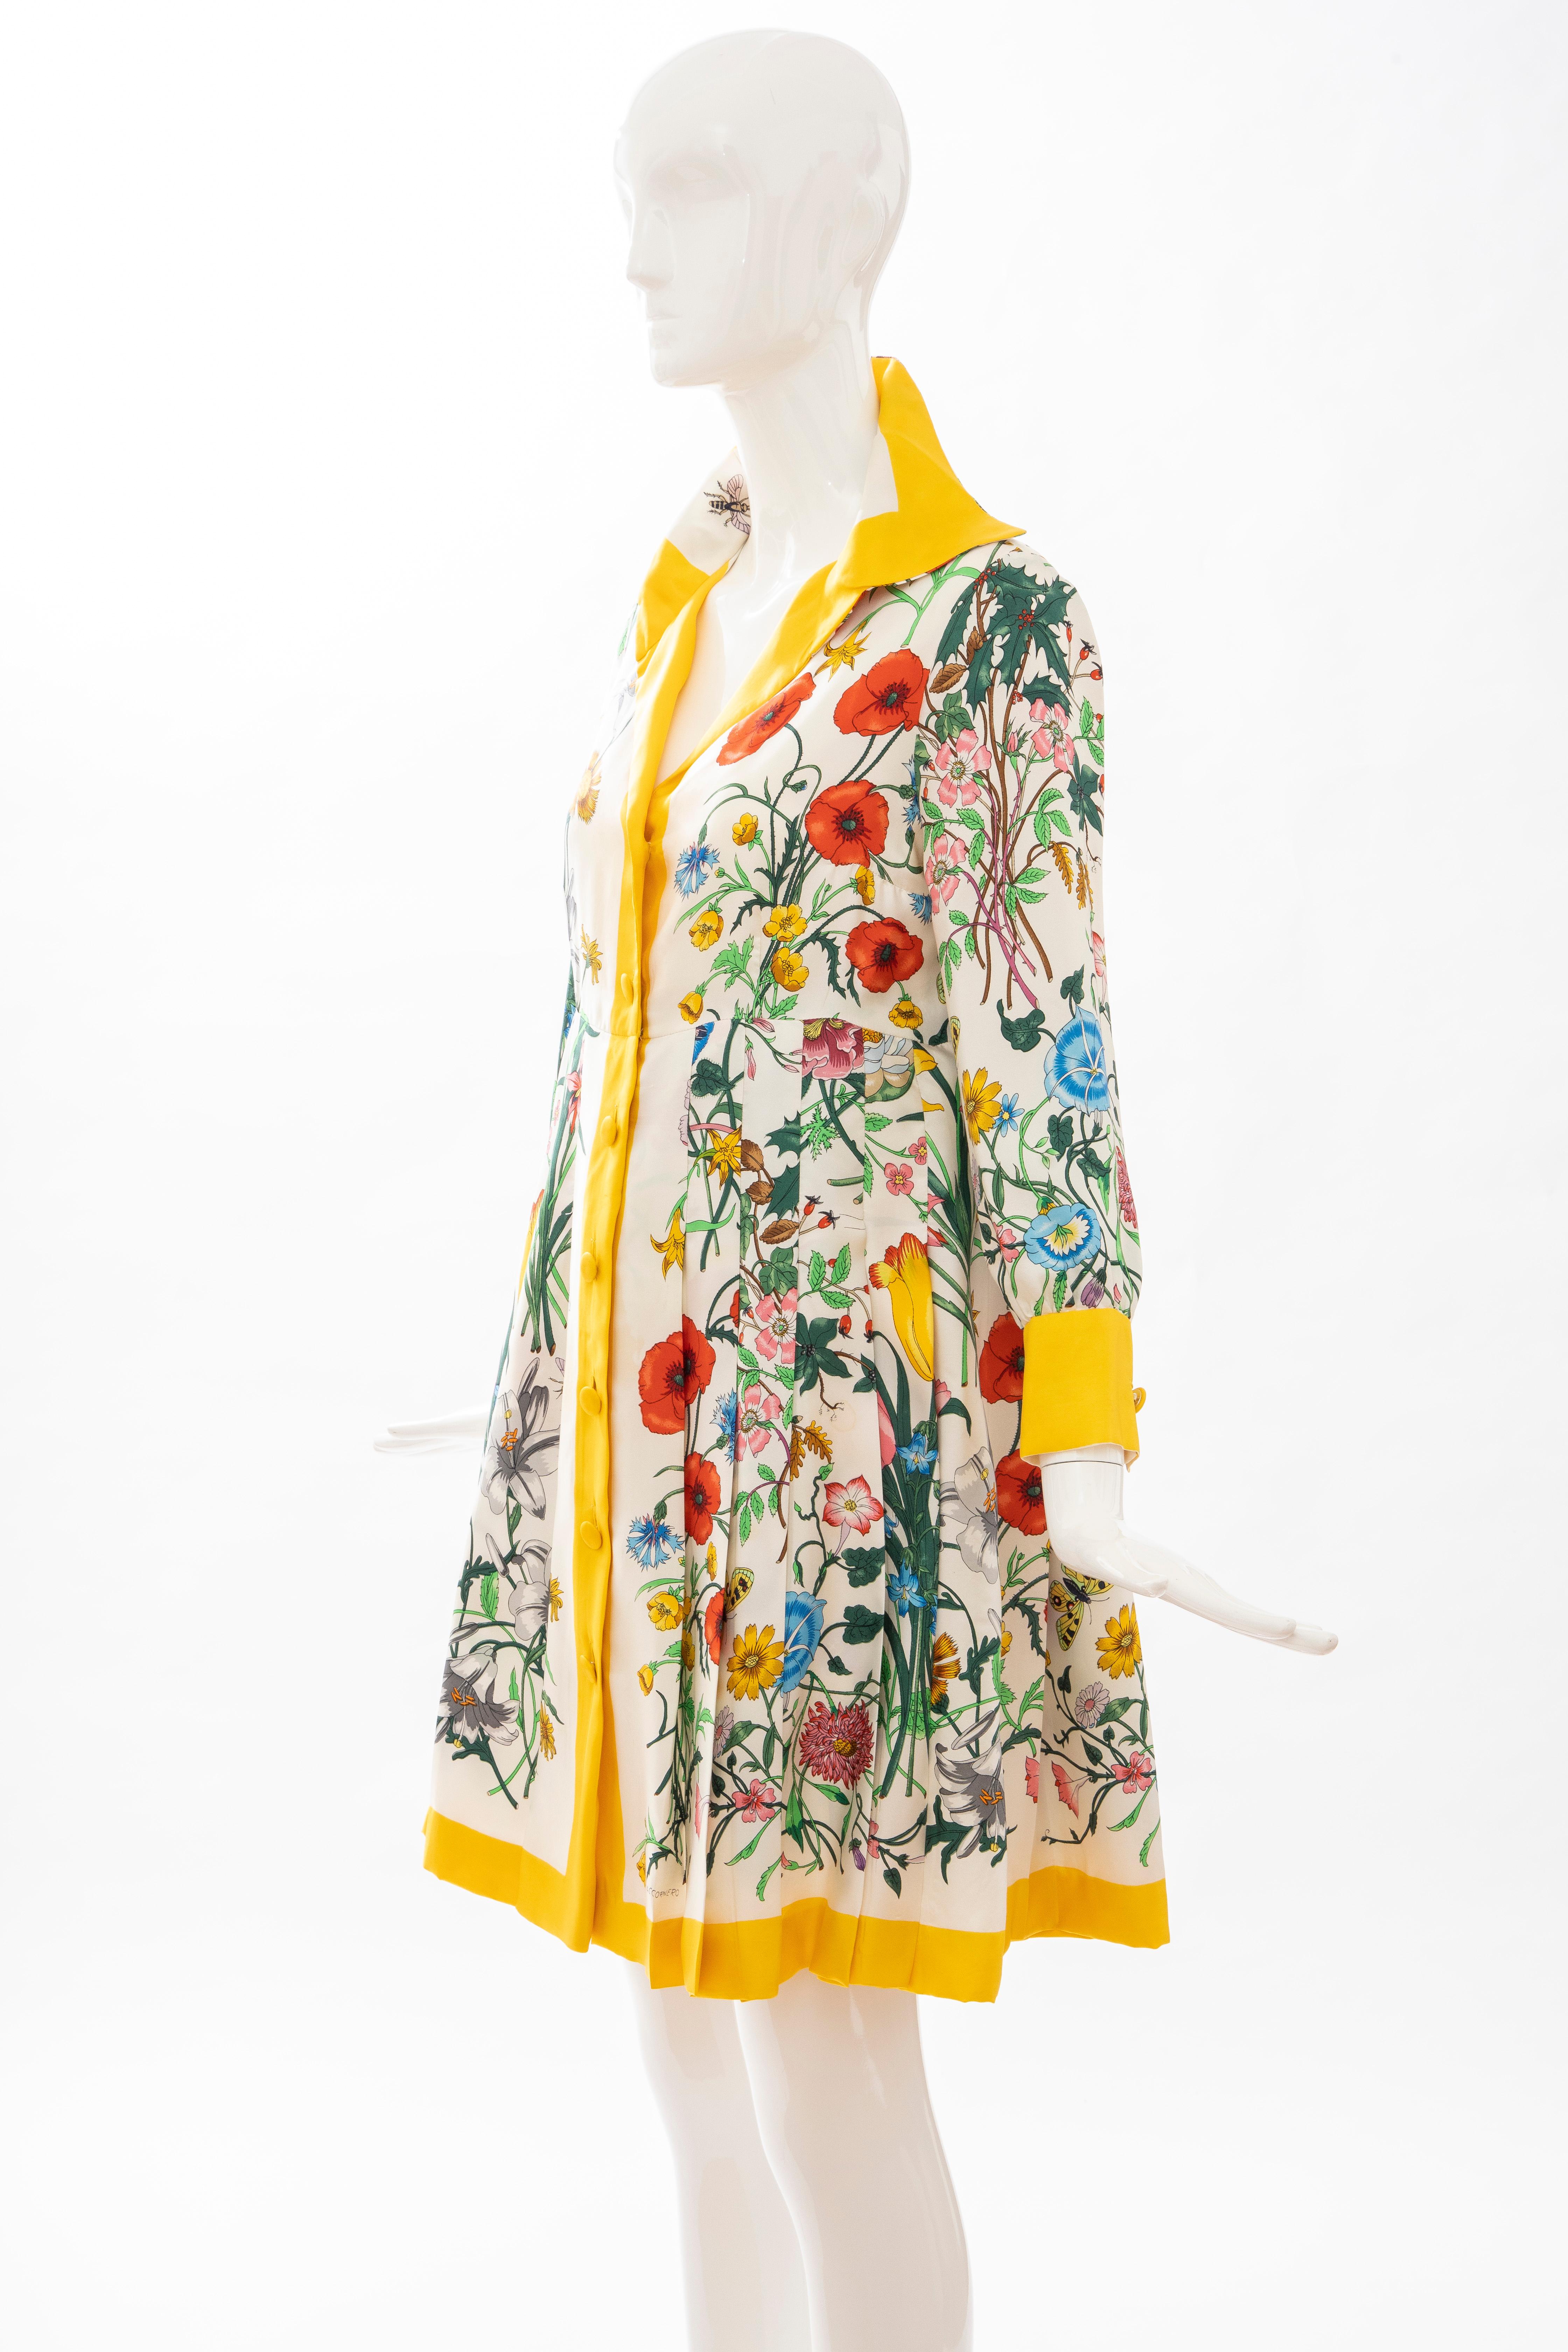 Gucci Vittorio Accornero Flora Fauna Screen Printed Silk Dress, Circa: 1970's 9